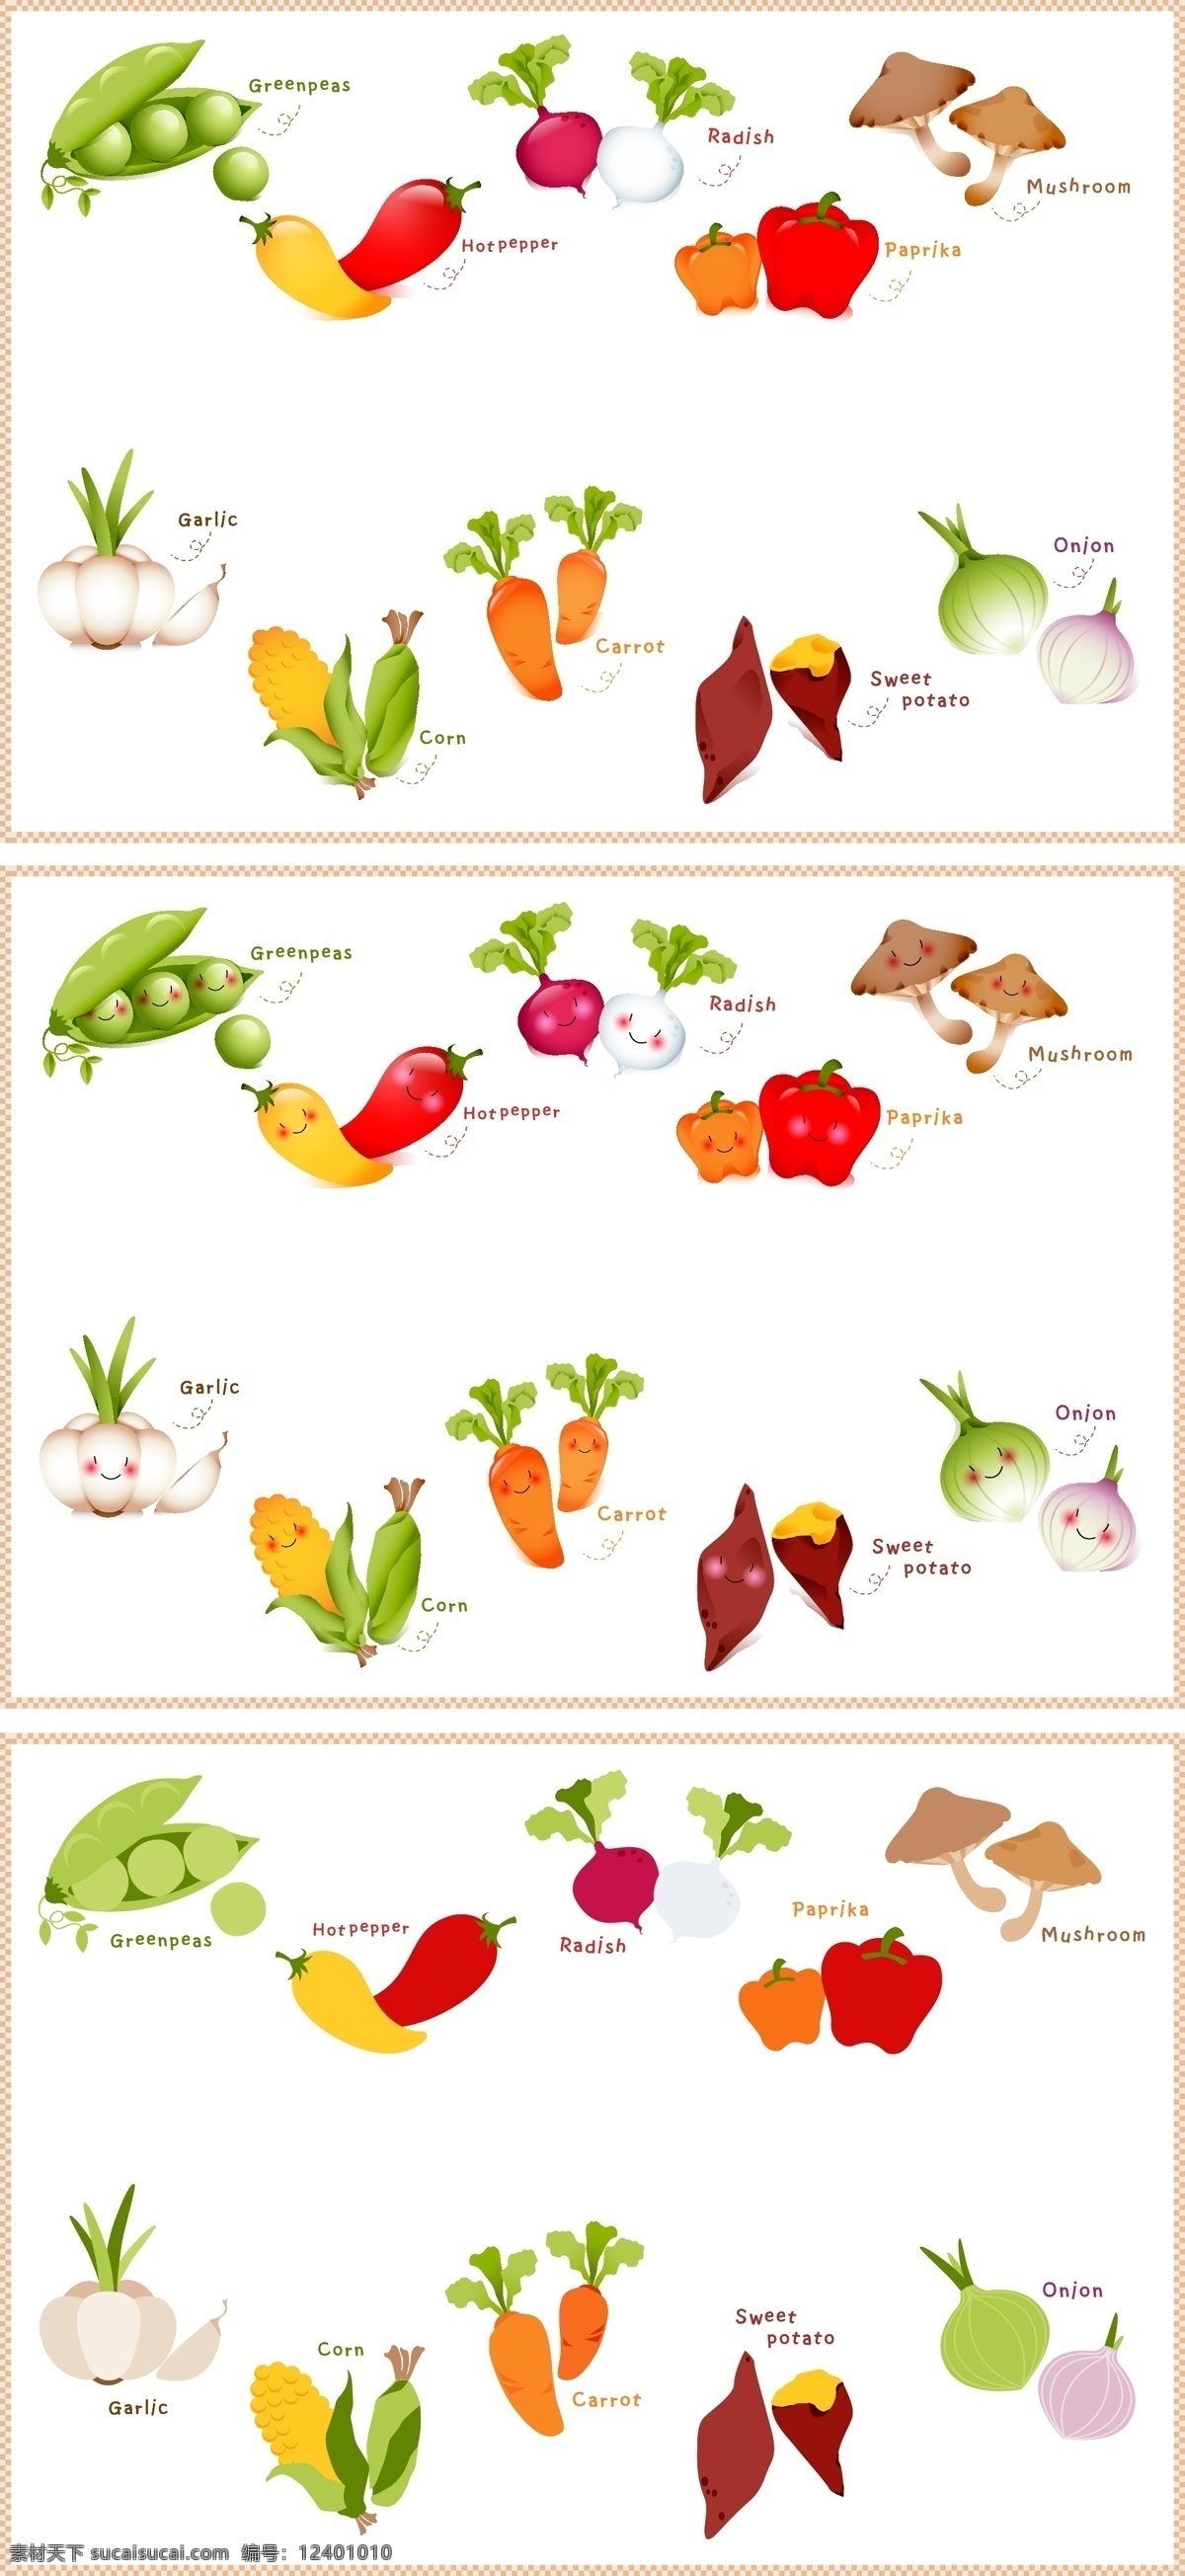 可爱 蔬果 矢量 扁豆 地瓜 青椒 蔬菜 洋葱 玉米 红罗布 fruitbox 矢量图 其他矢量图